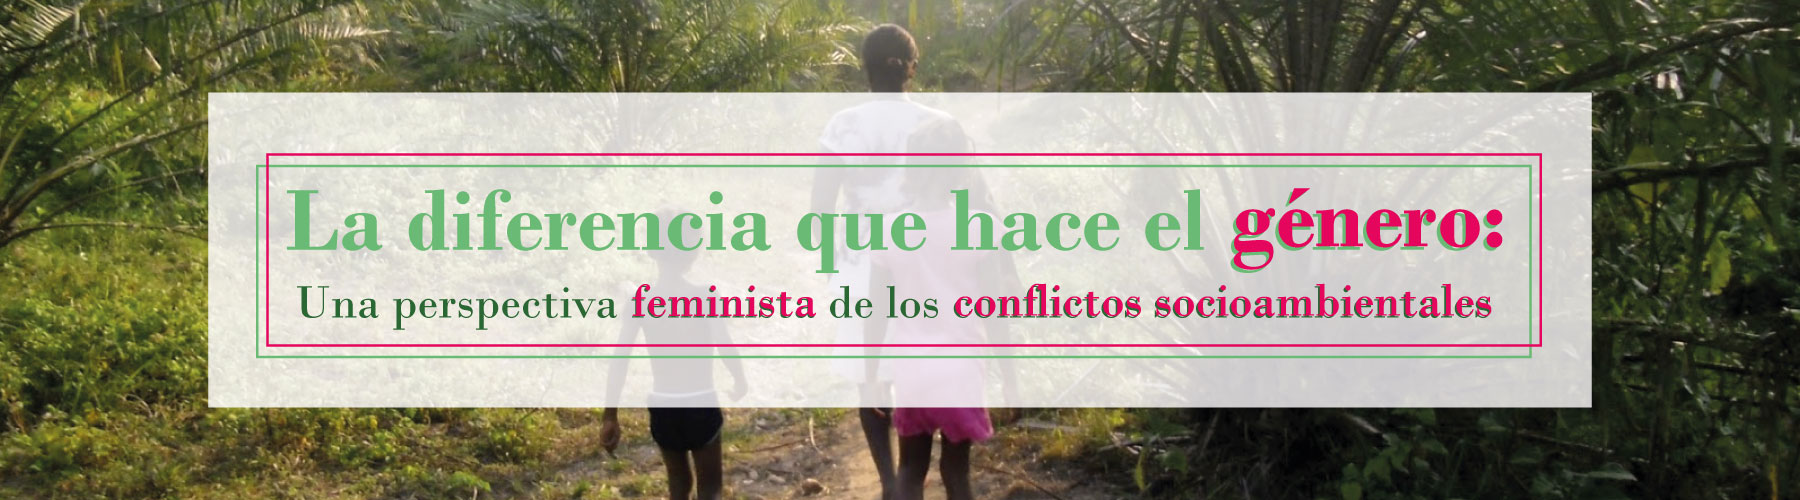 La diferencia que hace el género: Una perspectiva feminista de los conflictos socioambientales Cider | Uniandes